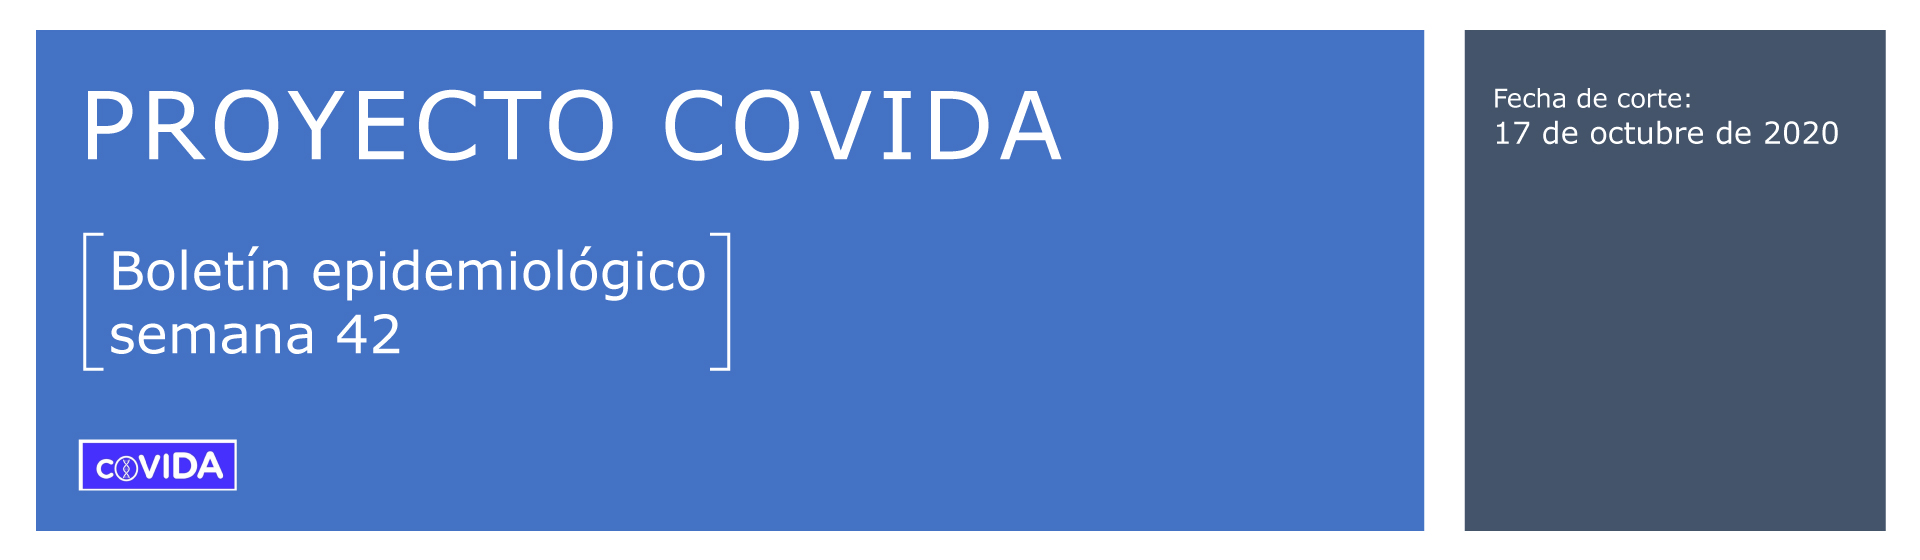 Proyecto COVIDA - Boletín epidemiológico - Semana 42